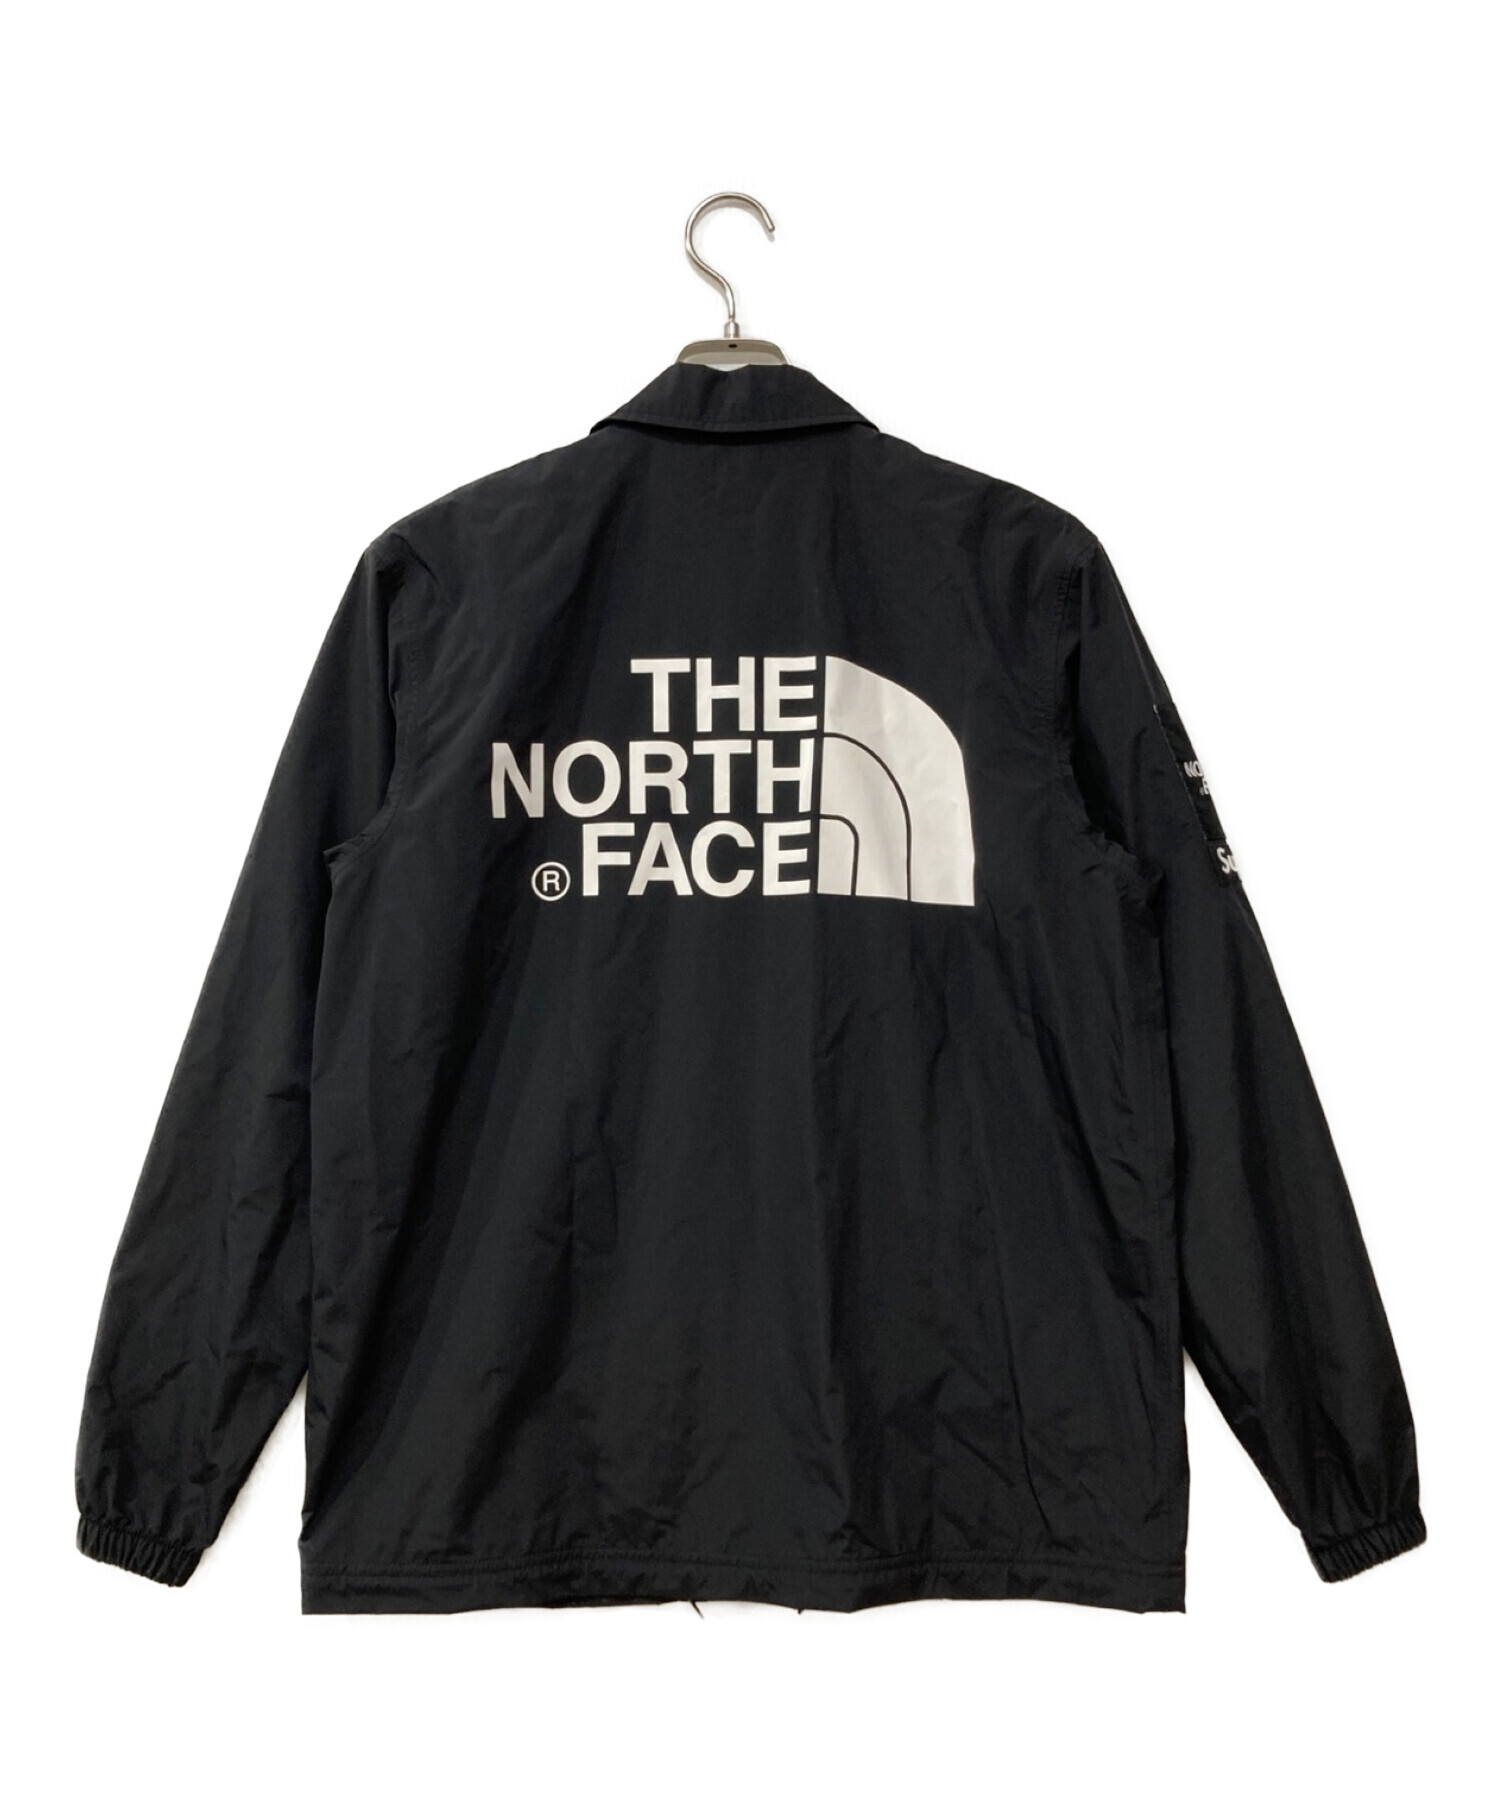 専用 Supreme North Face Coaches Jacket